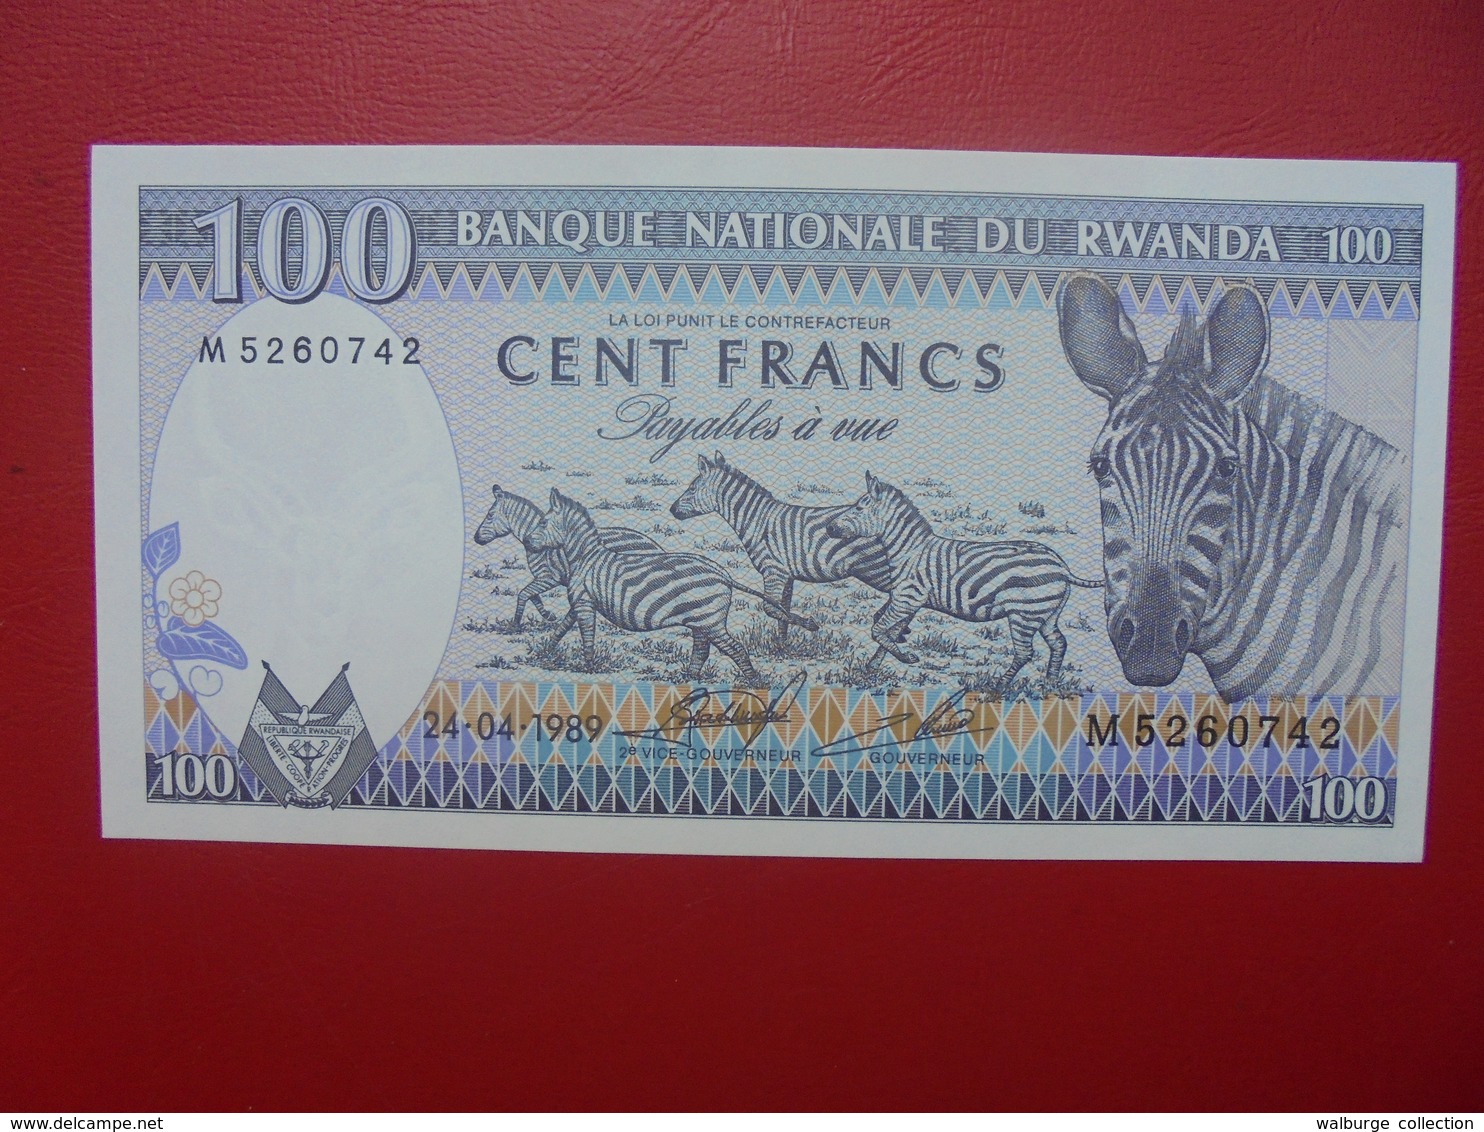 RWANDA 100 FRANCS 1989 PEU CIRCULER (B.6) - Rwanda